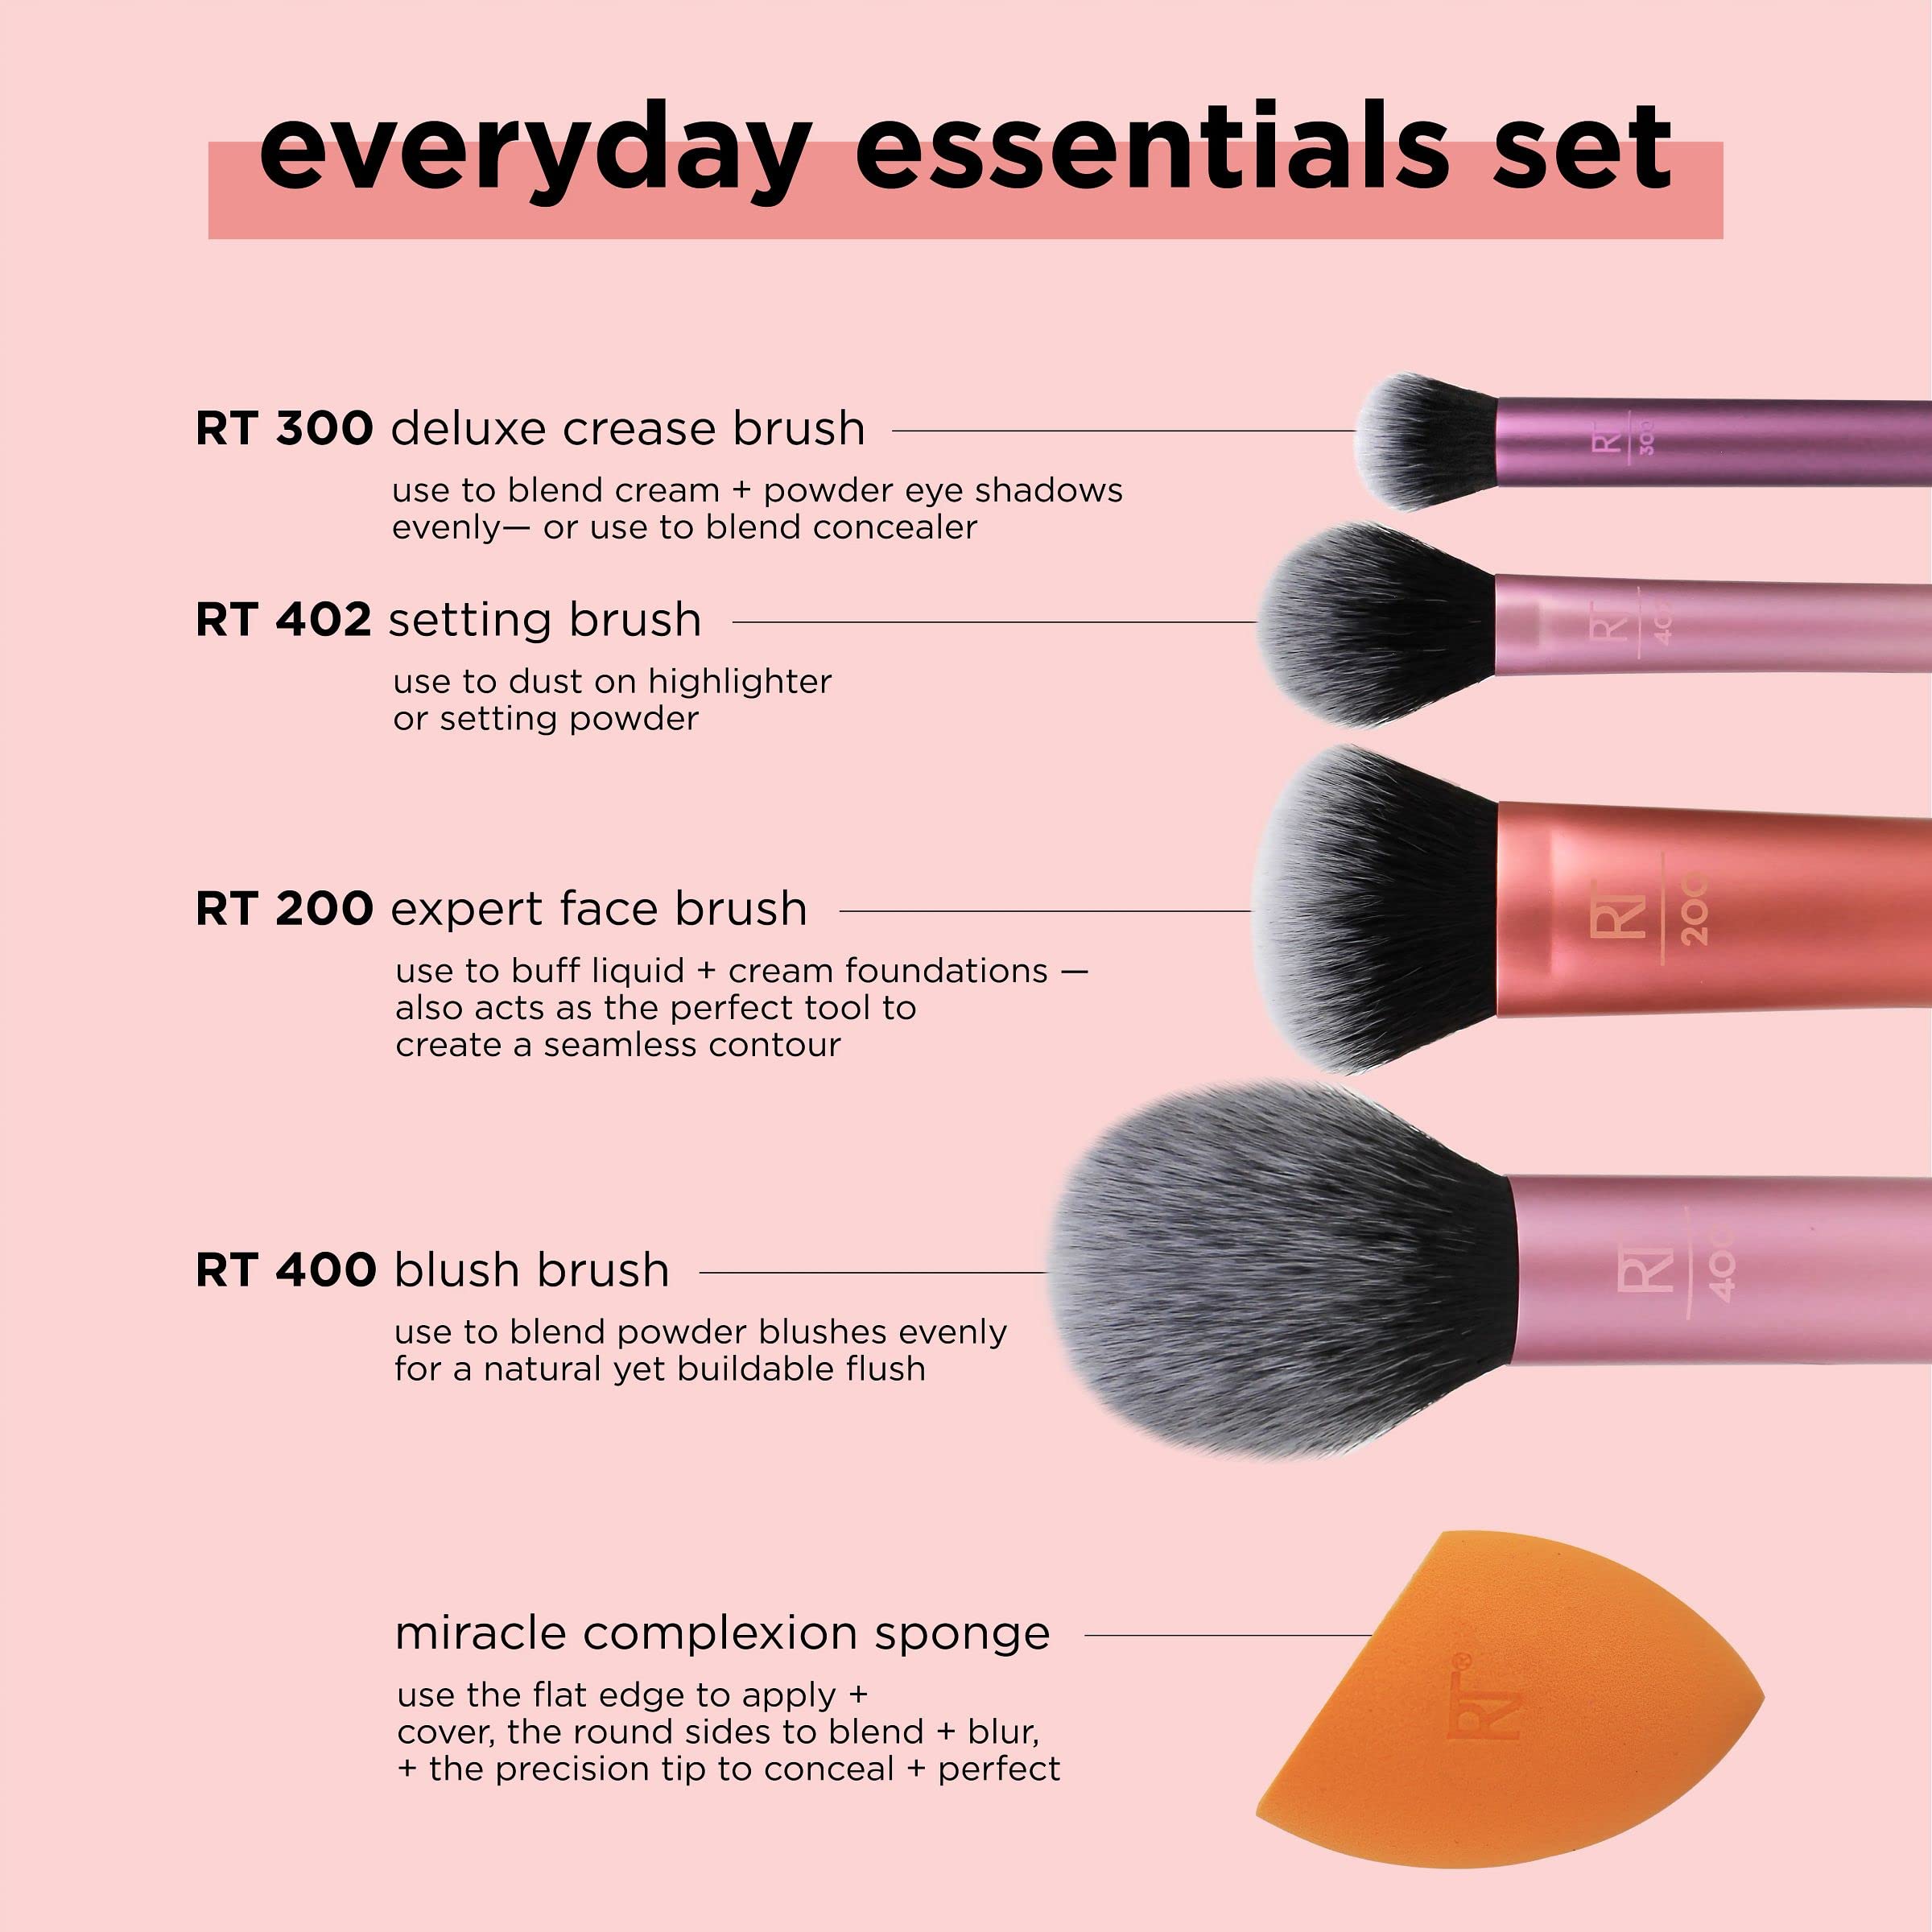 Real Techniques Everyday Essentials + Sponge Kit, Makeup Brushes & 2 Makeup Blending Sponge Set, For Foundation, Blush, Bronzer,